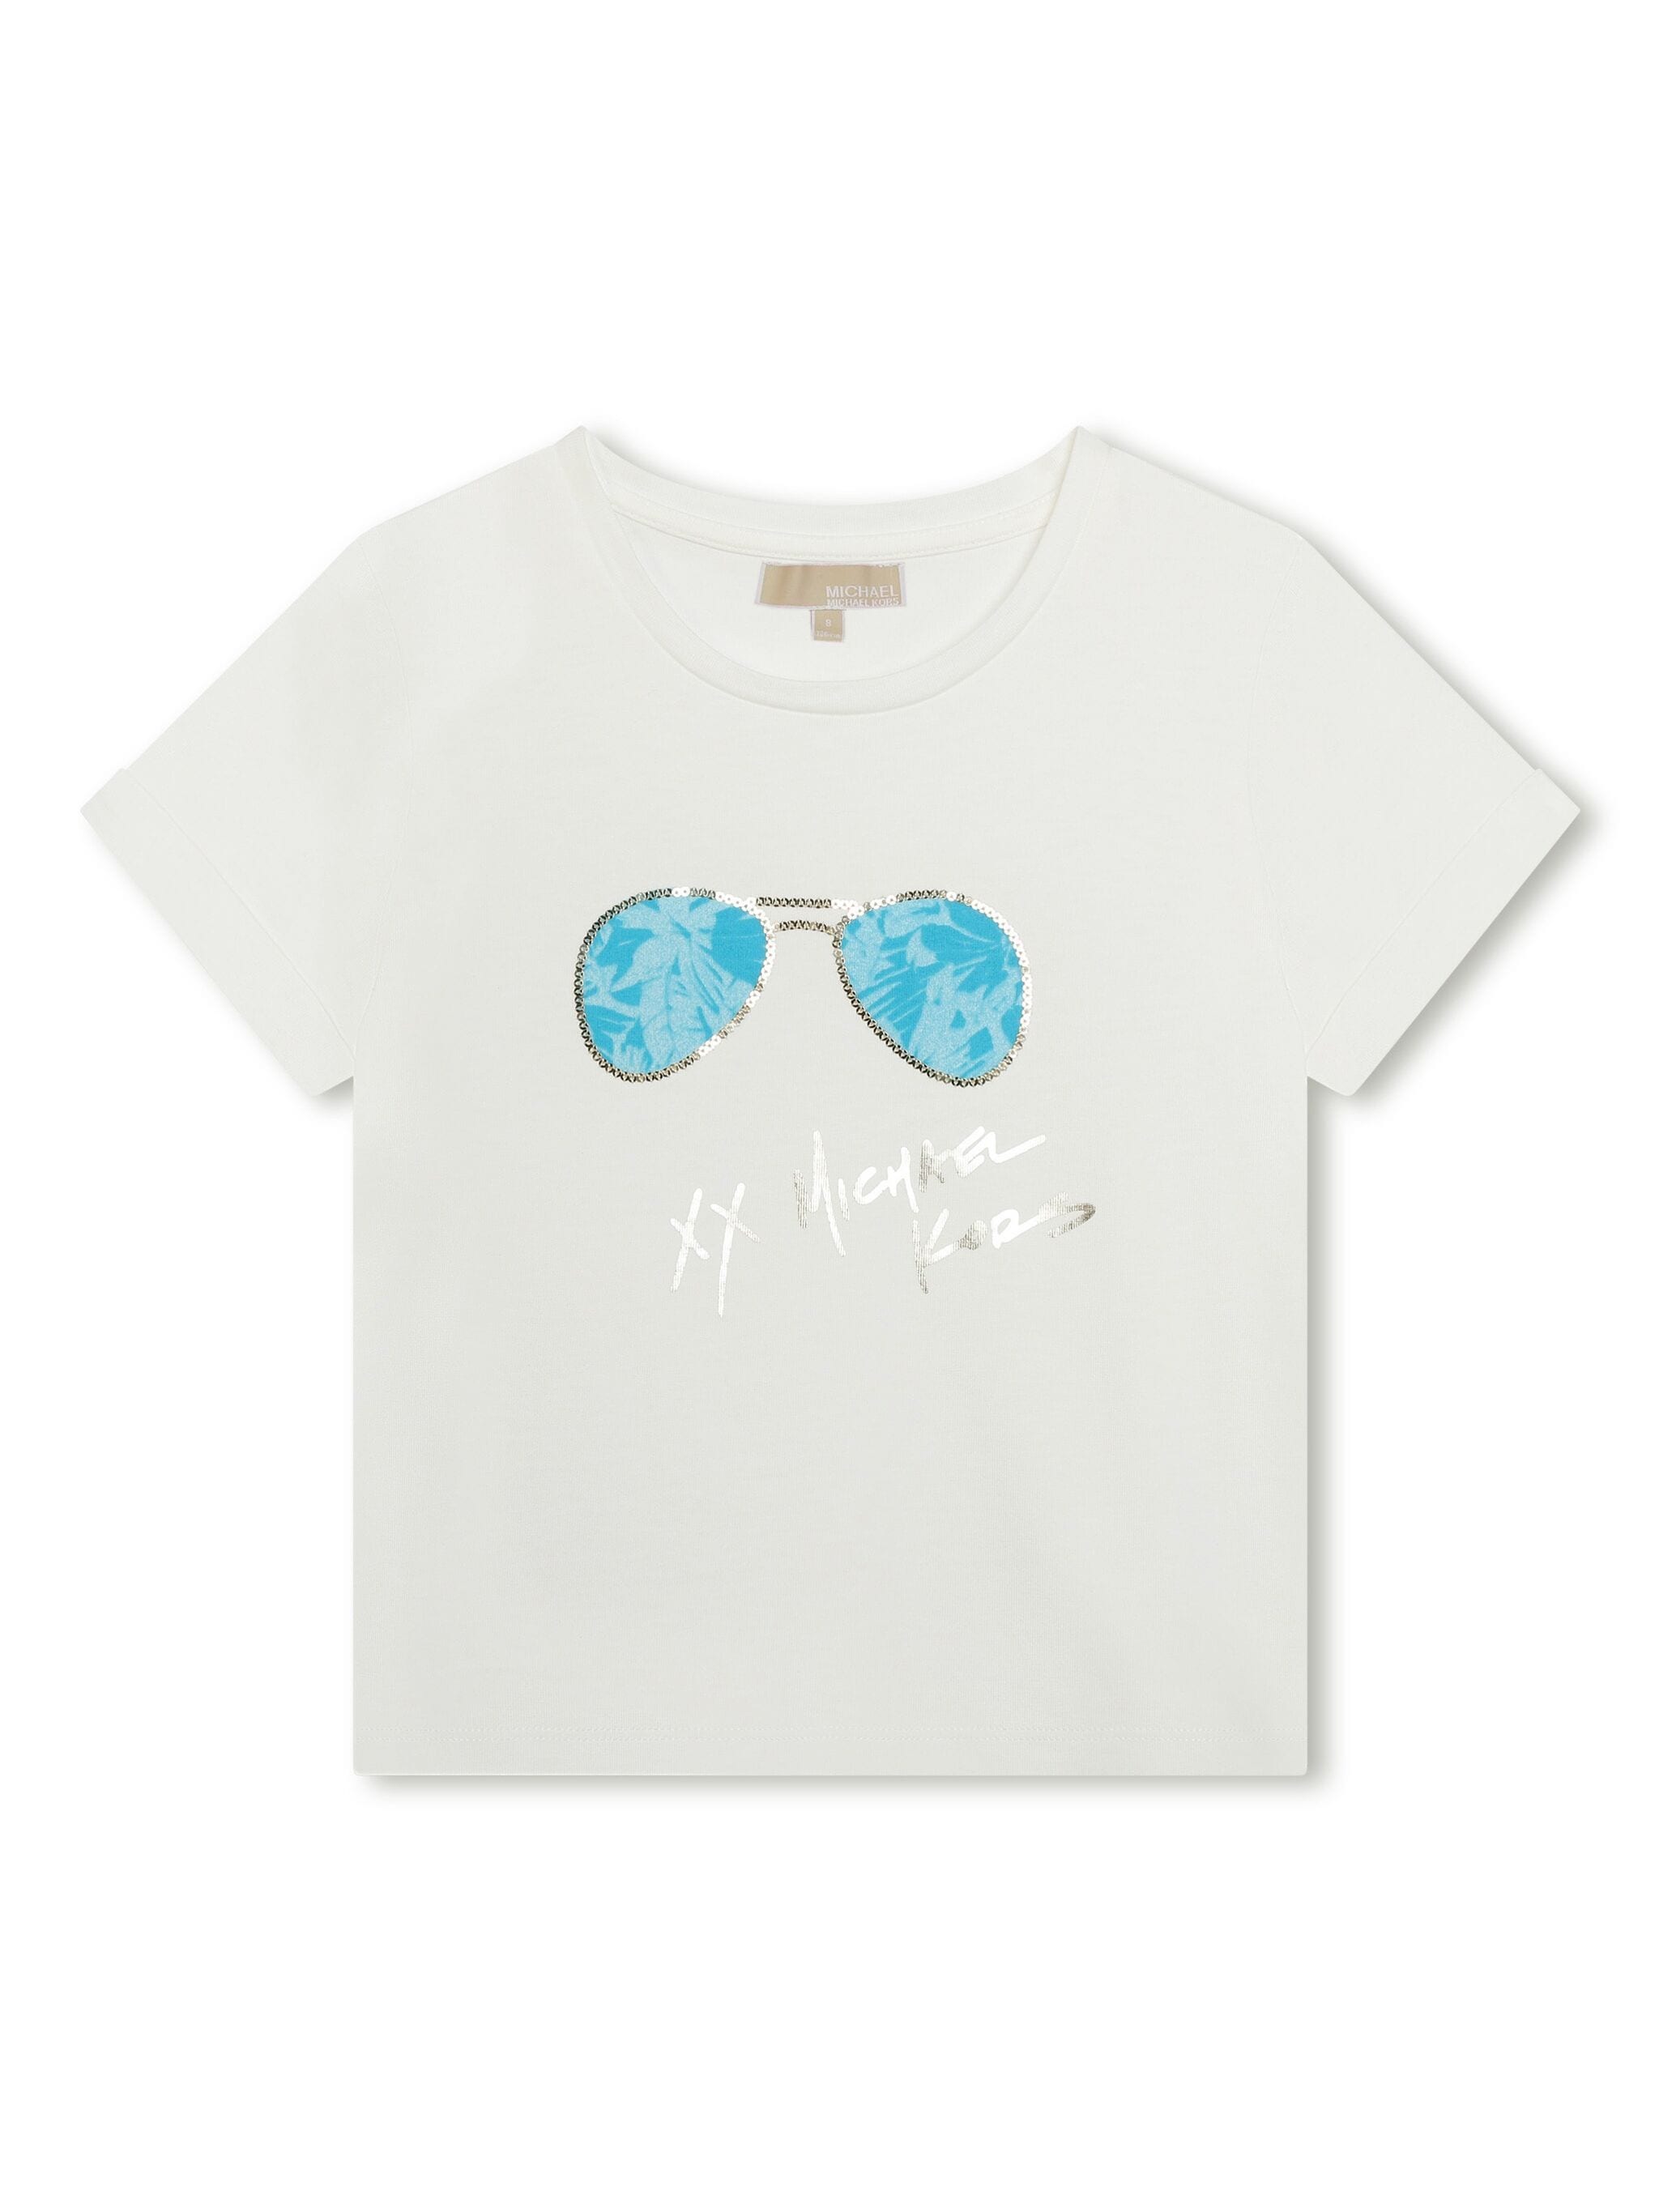 Michael Kors Sunglass T-Shirt